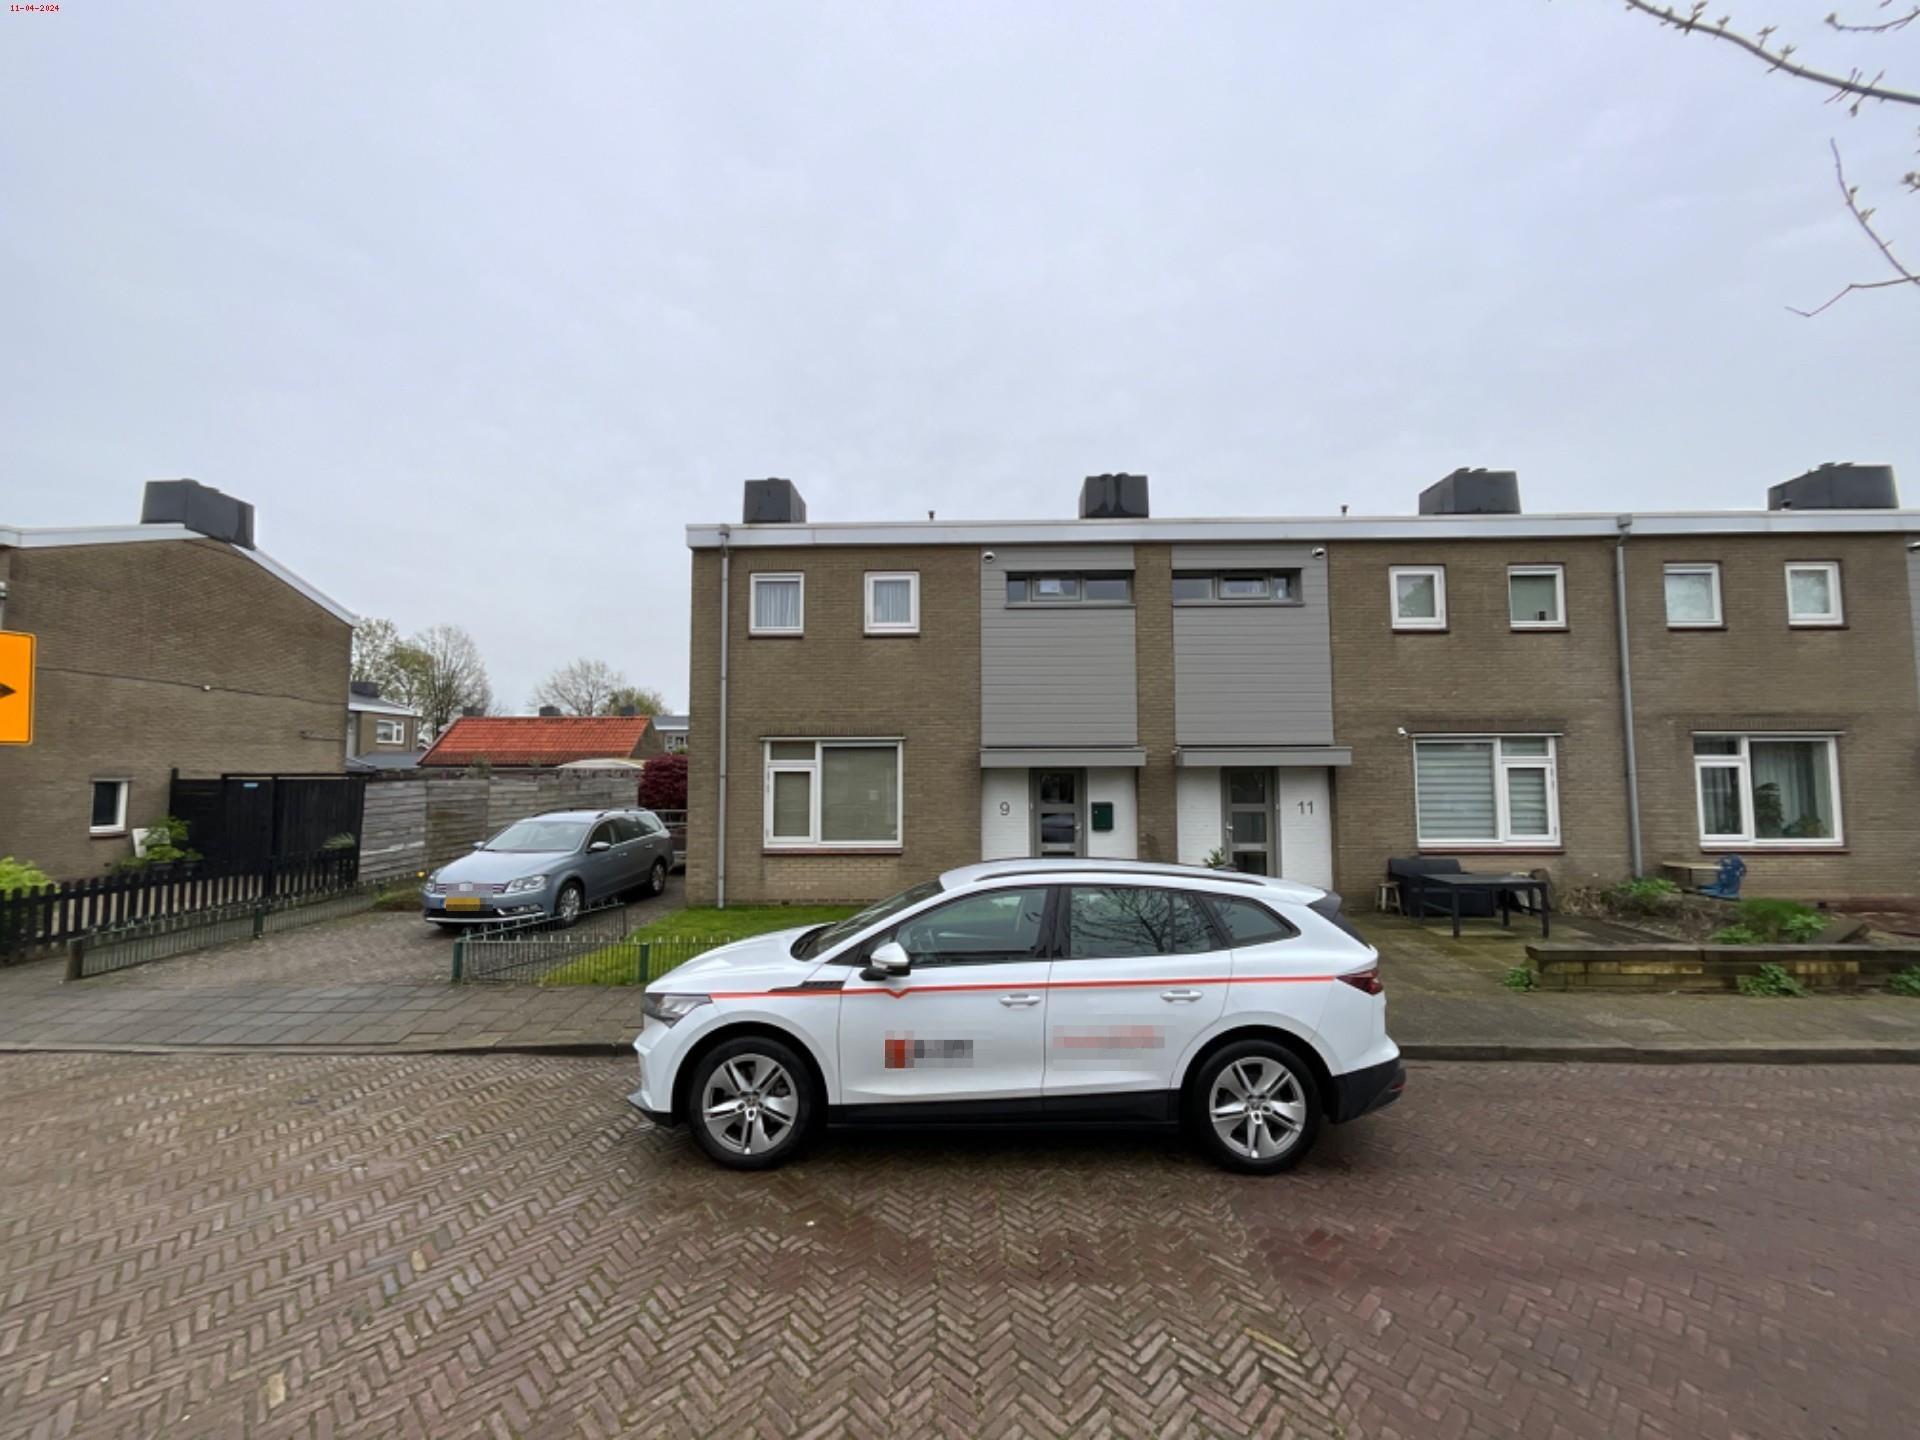 Johan van Meeckerenstraat 9, 6991 XR Rheden, Nederland